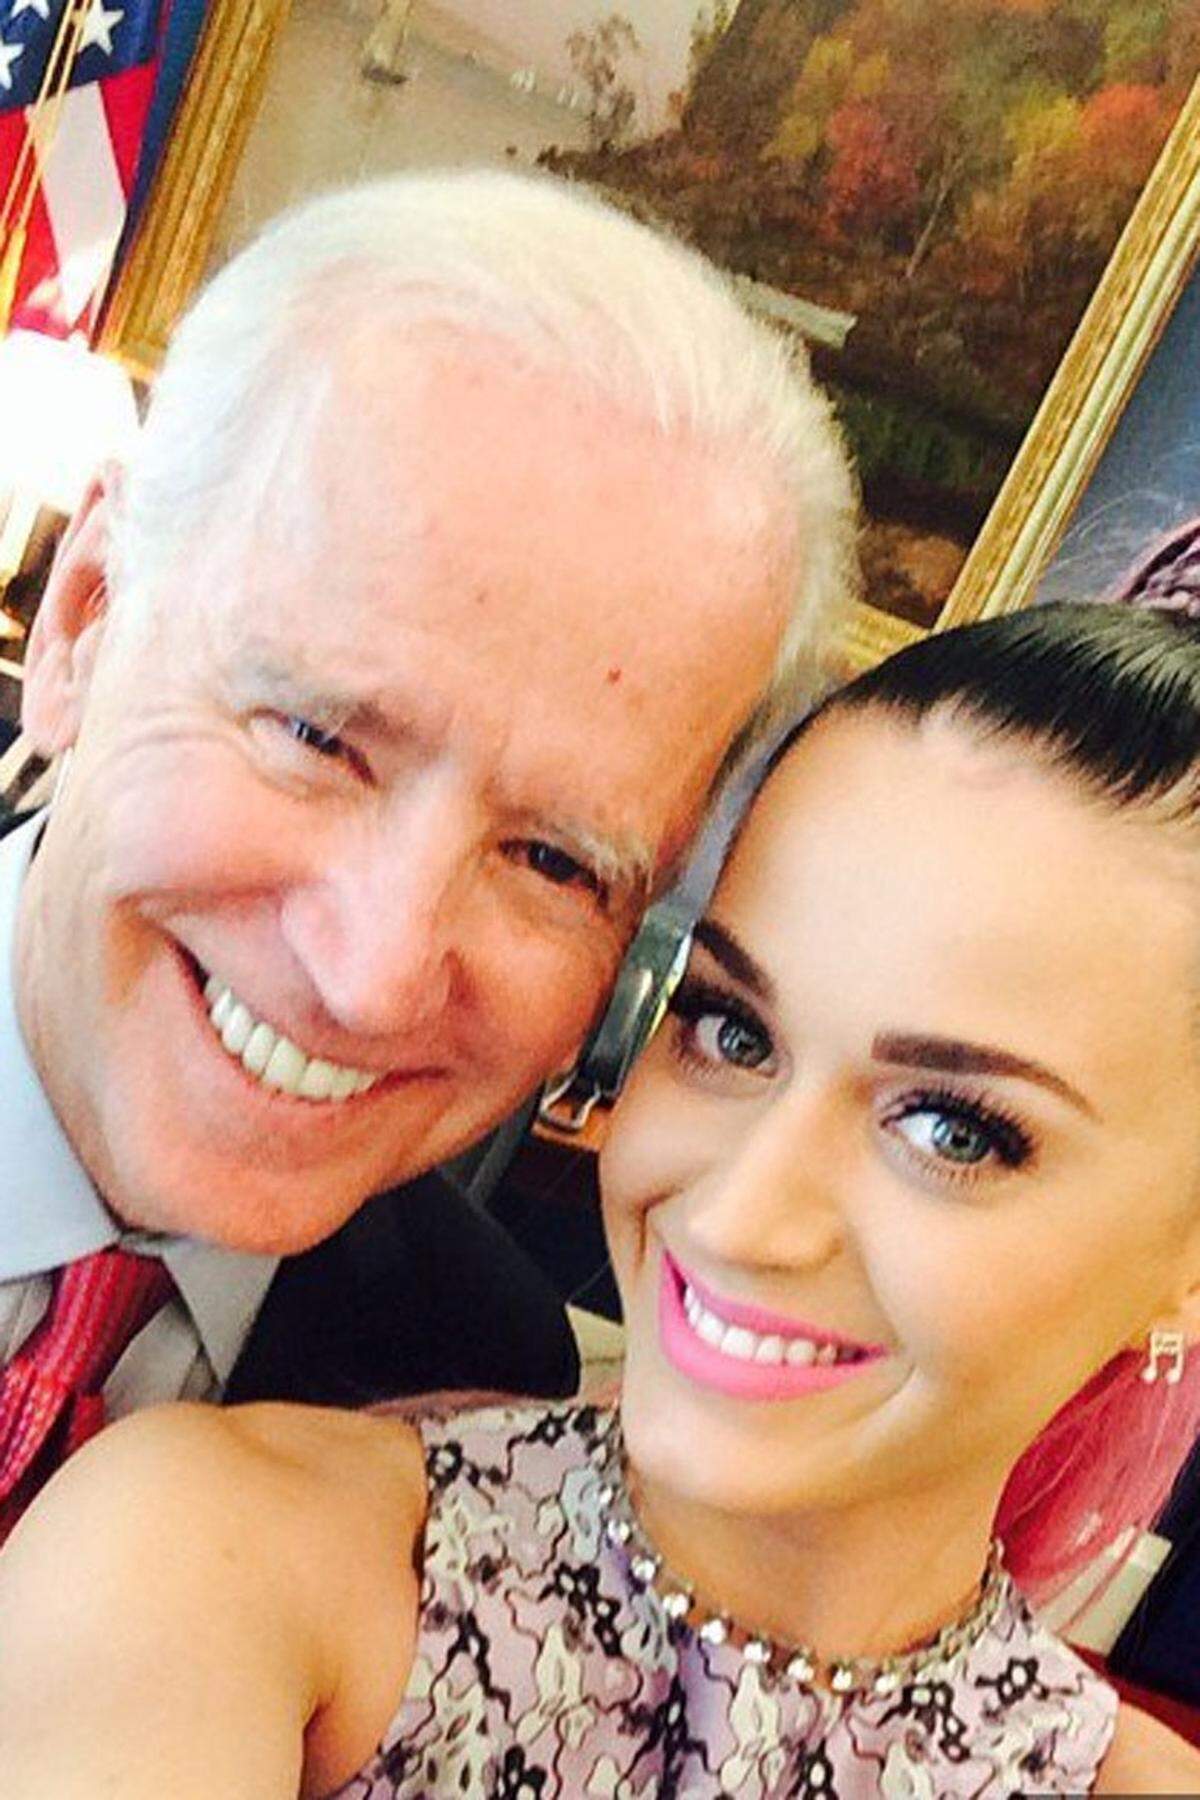 Politiker und Popstars sind eine aufmerksamkeitsstarke Symbiose. US-Vizepräsident Joe Biden wählte Katy Perry für ein Selfie aus.